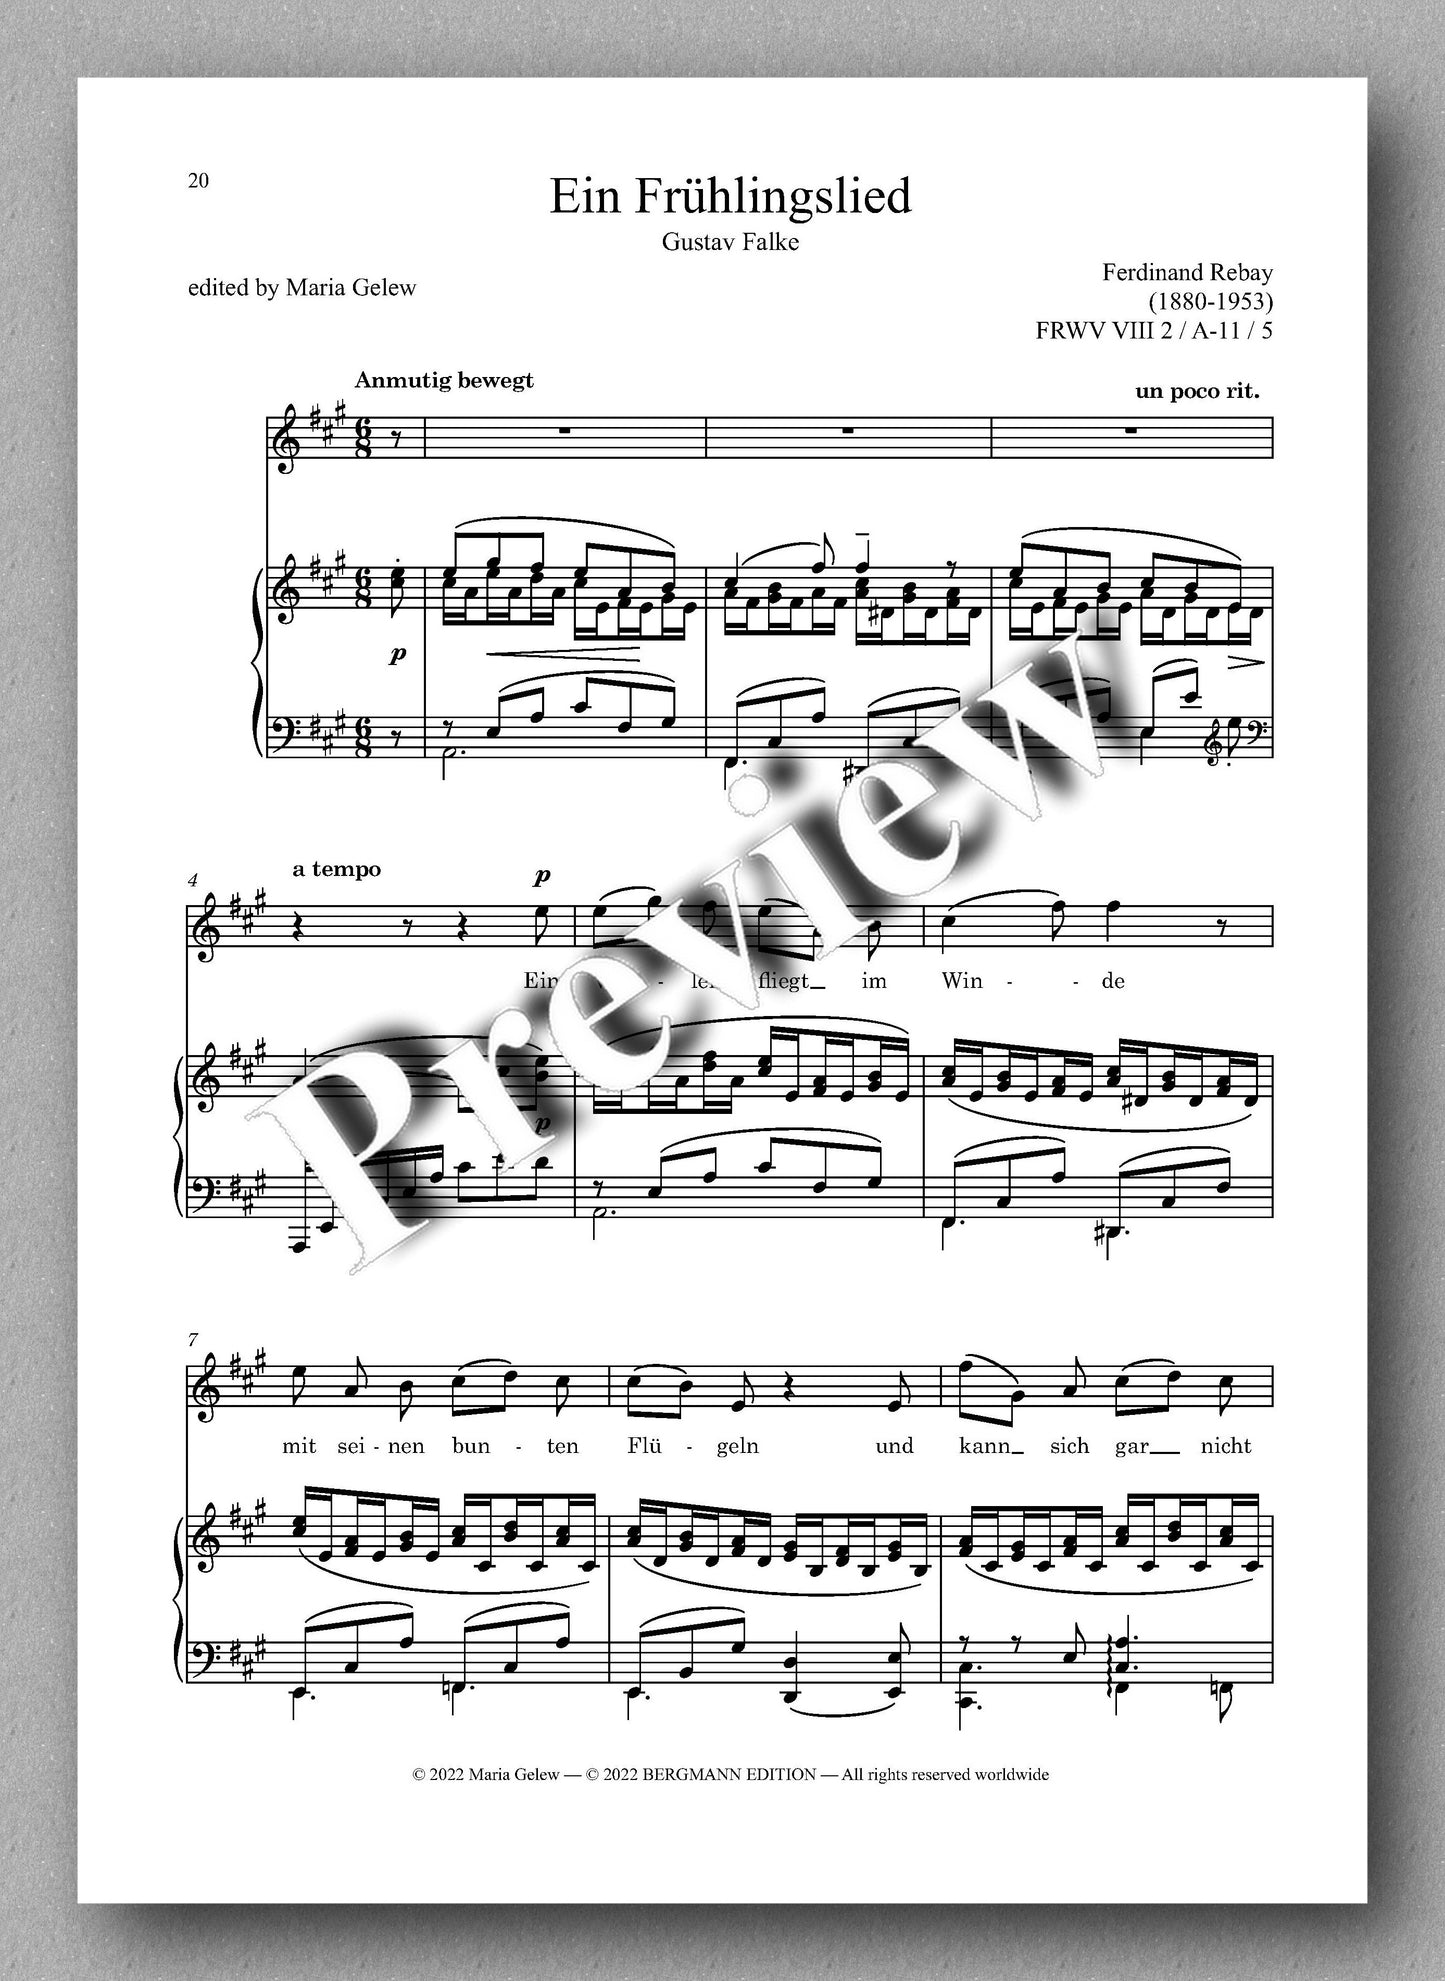 Ferdinand Rebay, Lieder nach Gedichten von Gustav Falke - preview of the music score 3